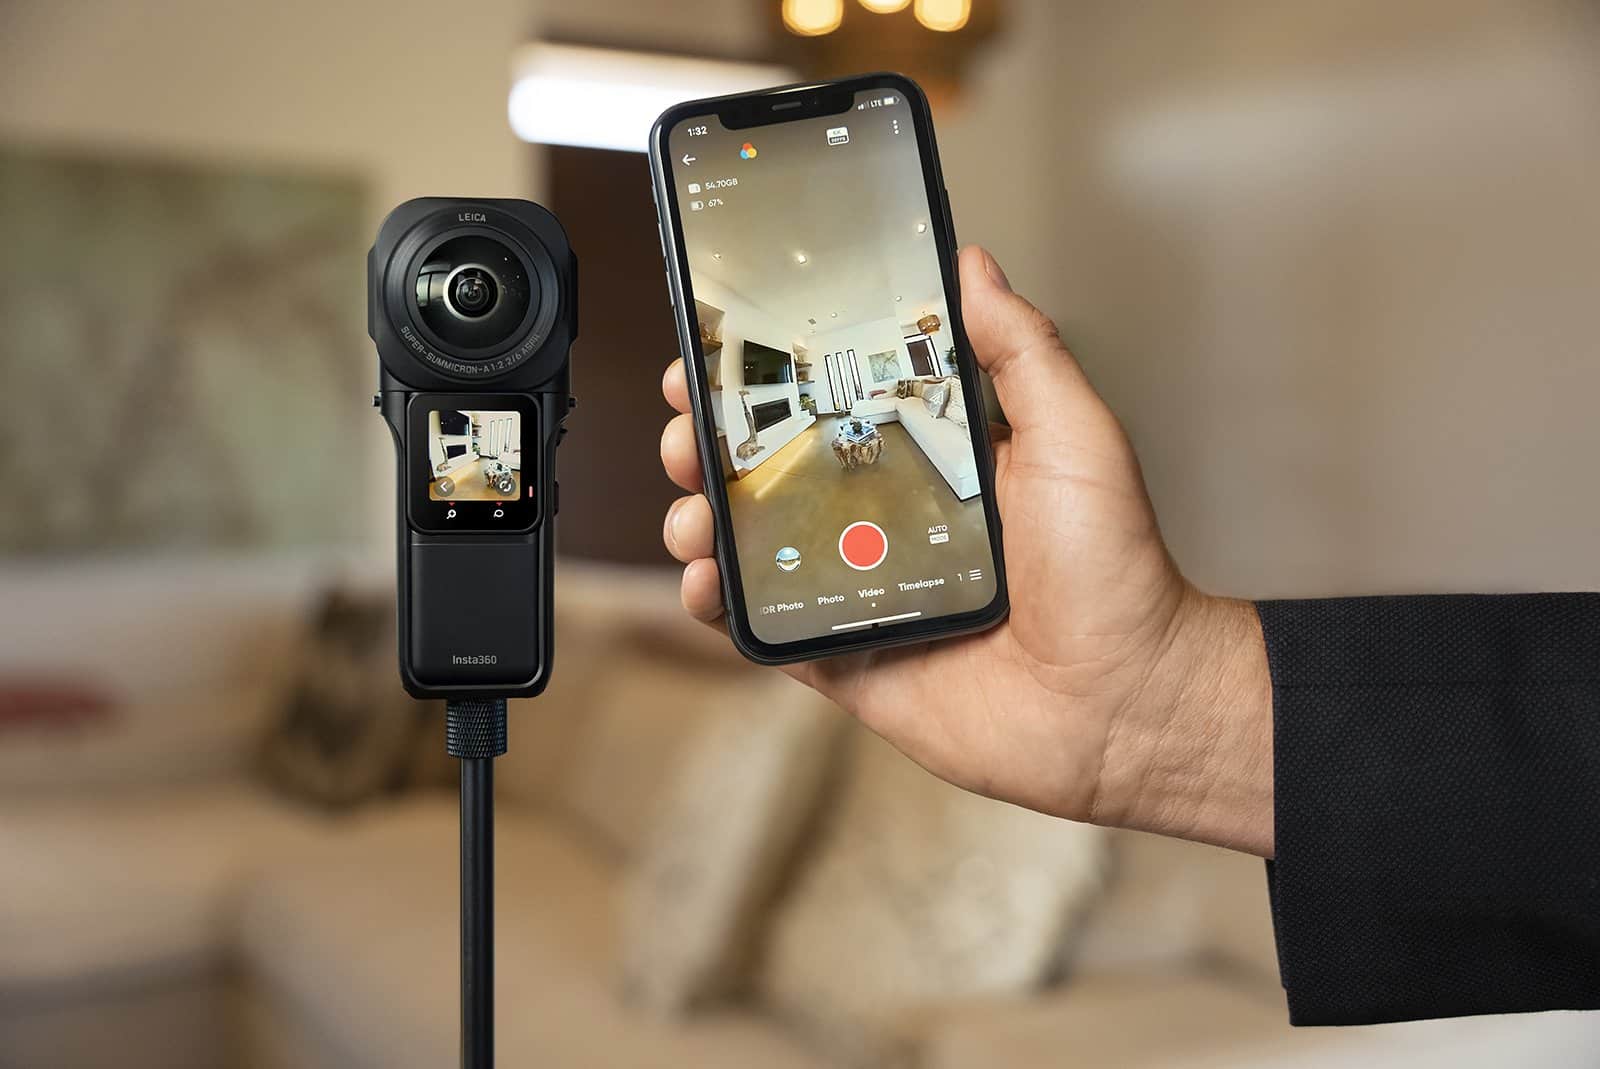 Insta360 ra mắt ONE RS 1-inch 360 Edition, phiên bản hợp tác cùng Leica đem đến chất lượng ảnh và video vượt trội nhờ cảm biến lớn